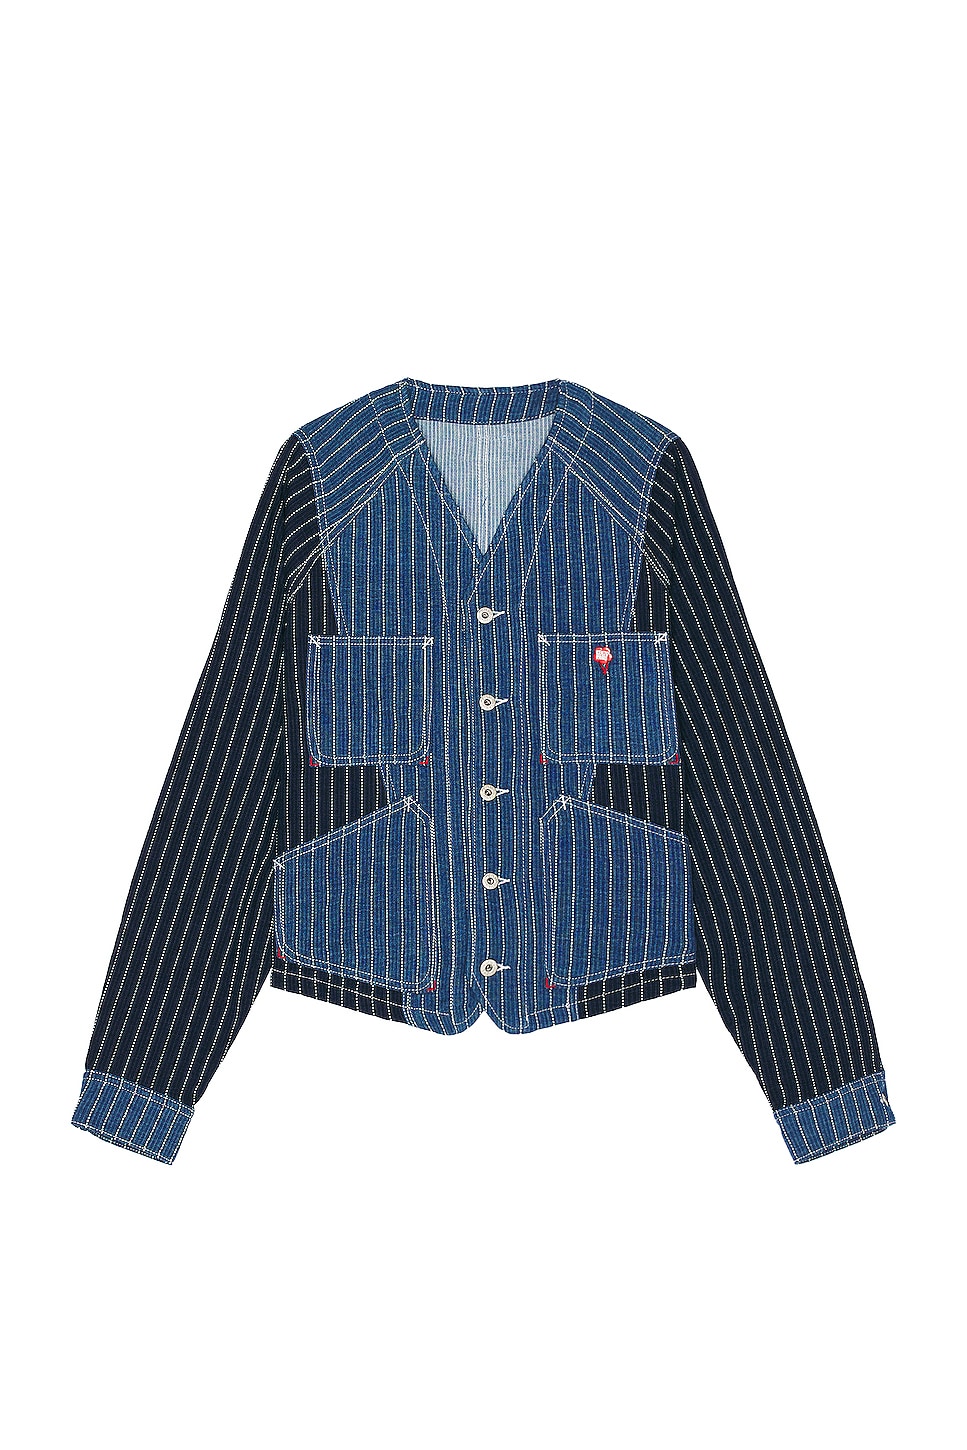 Image 1 of Kenzo Medium Stone Workwear Jacket in Medium Stone Blue Denim